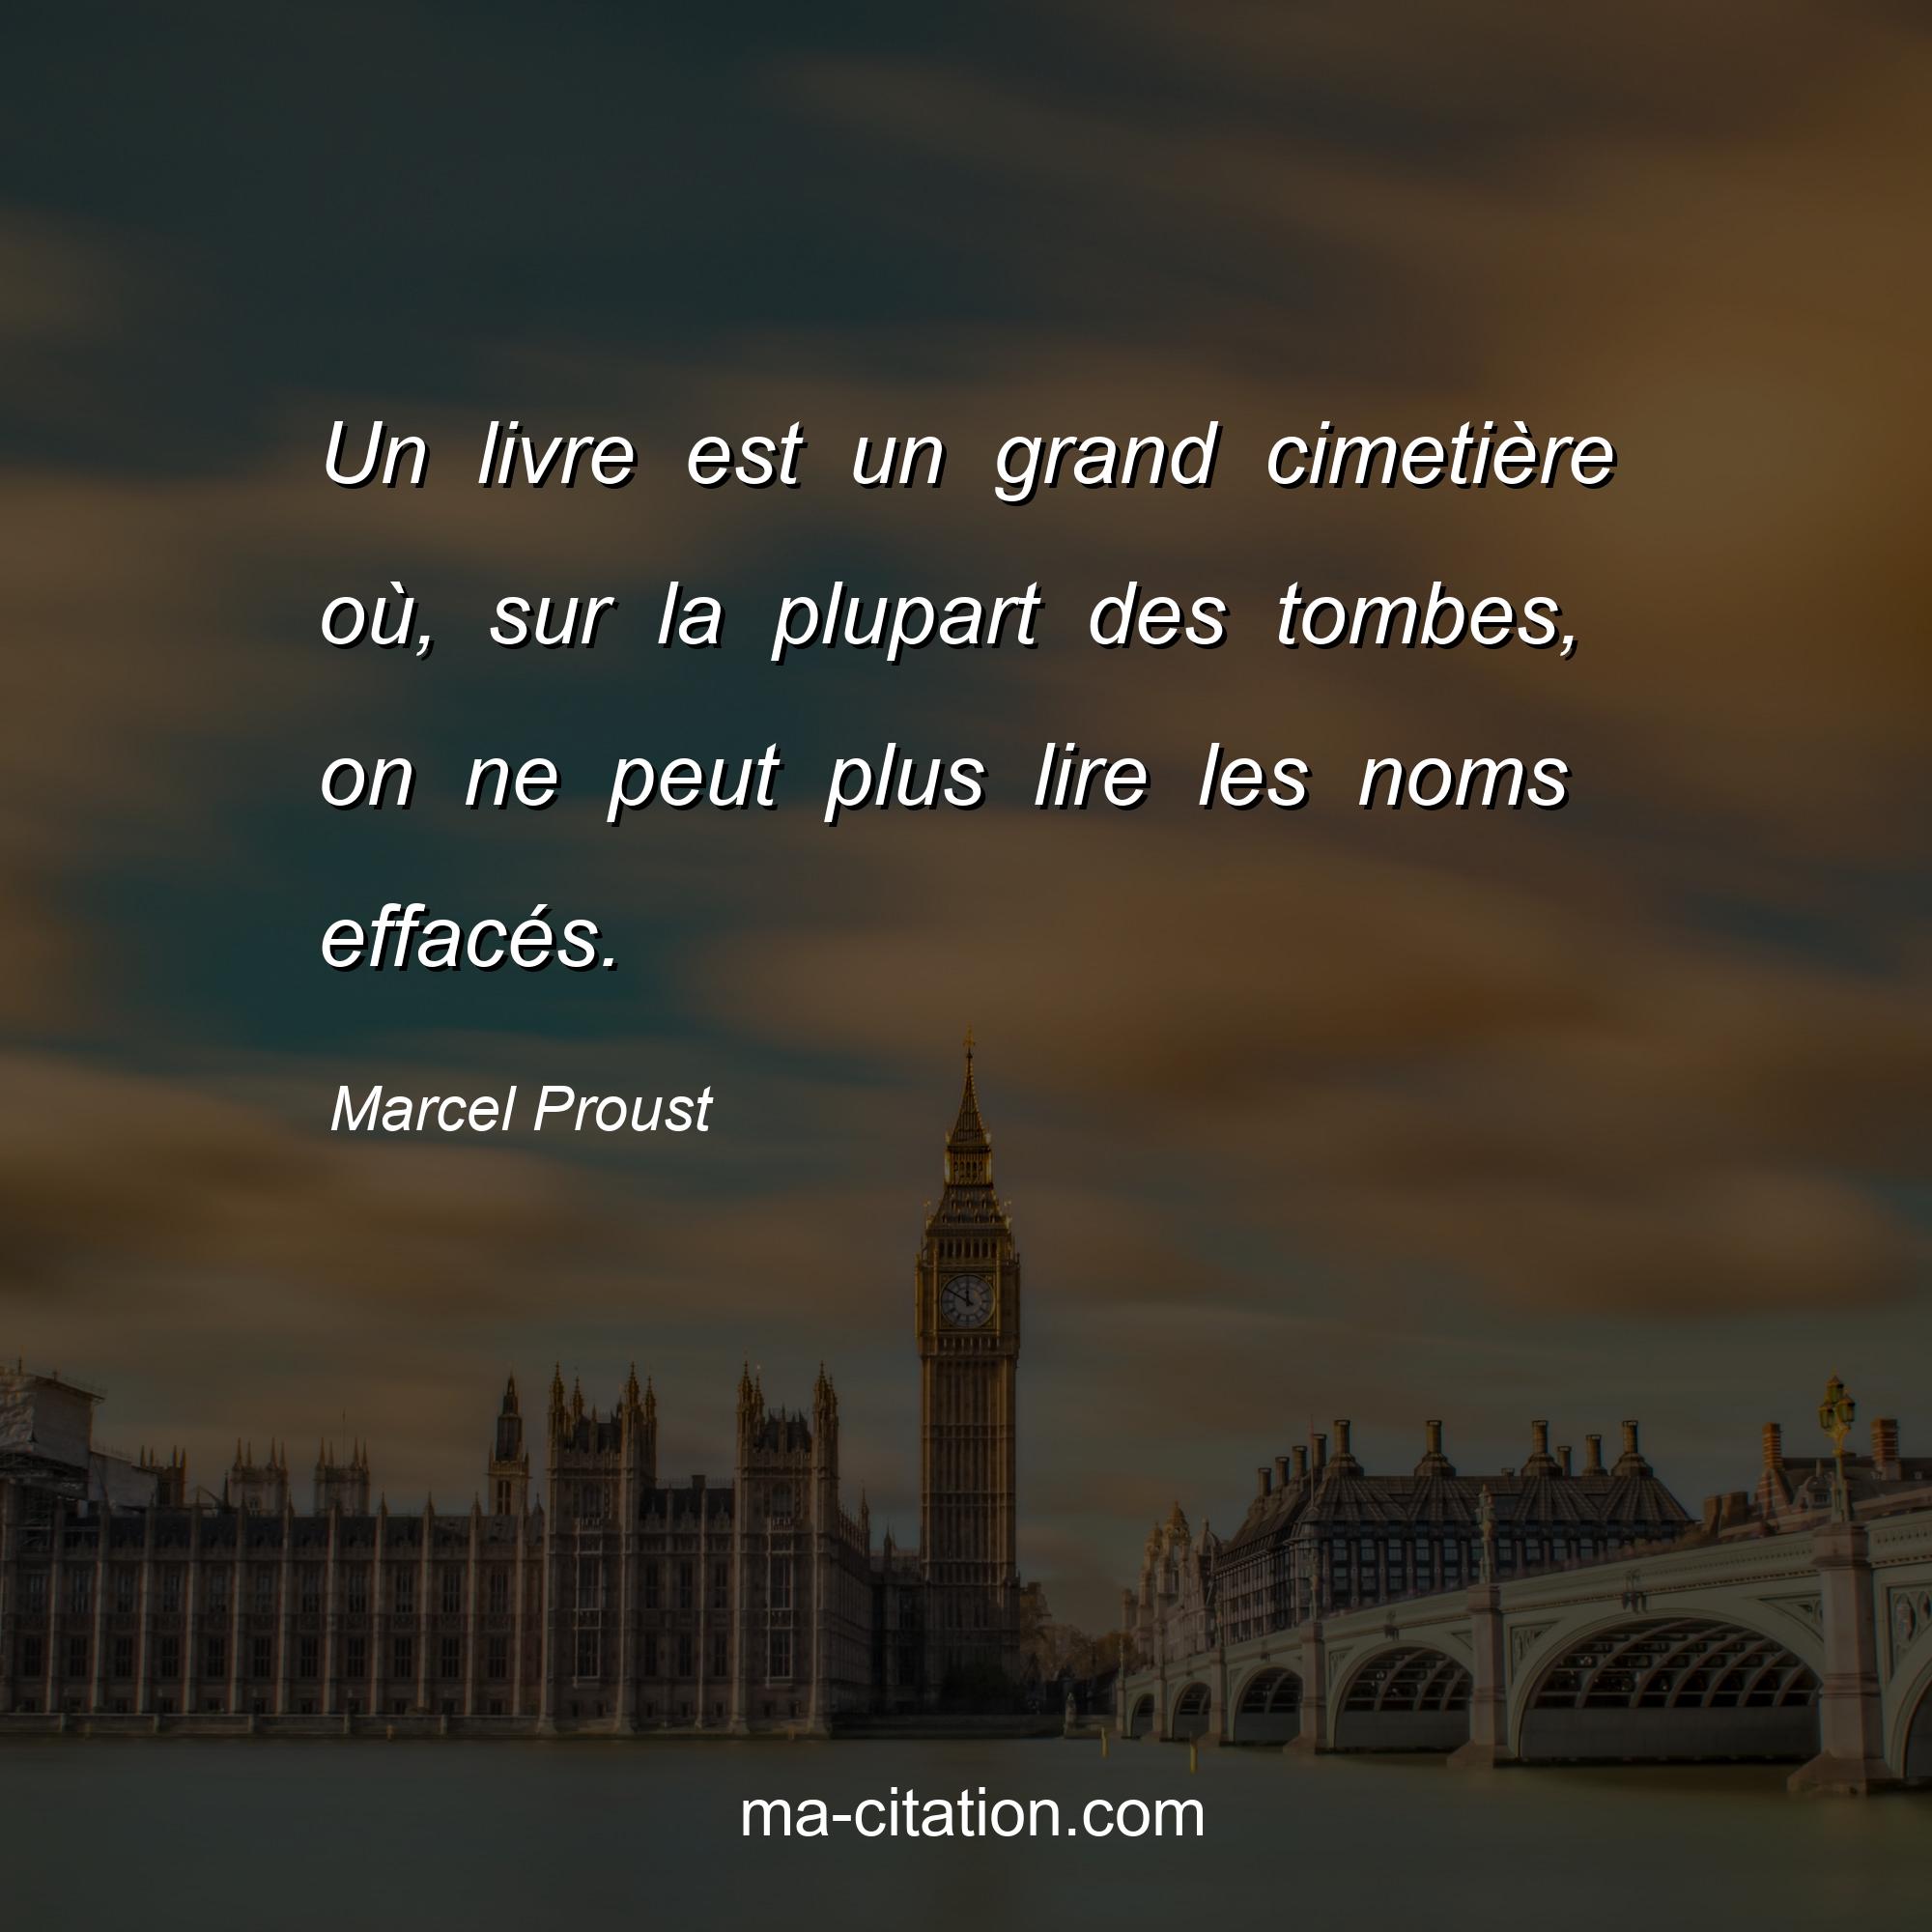 Marcel Proust : Un livre est un grand cimetière où, sur la plupart des tombes, on ne peut plus lire les noms effacés.